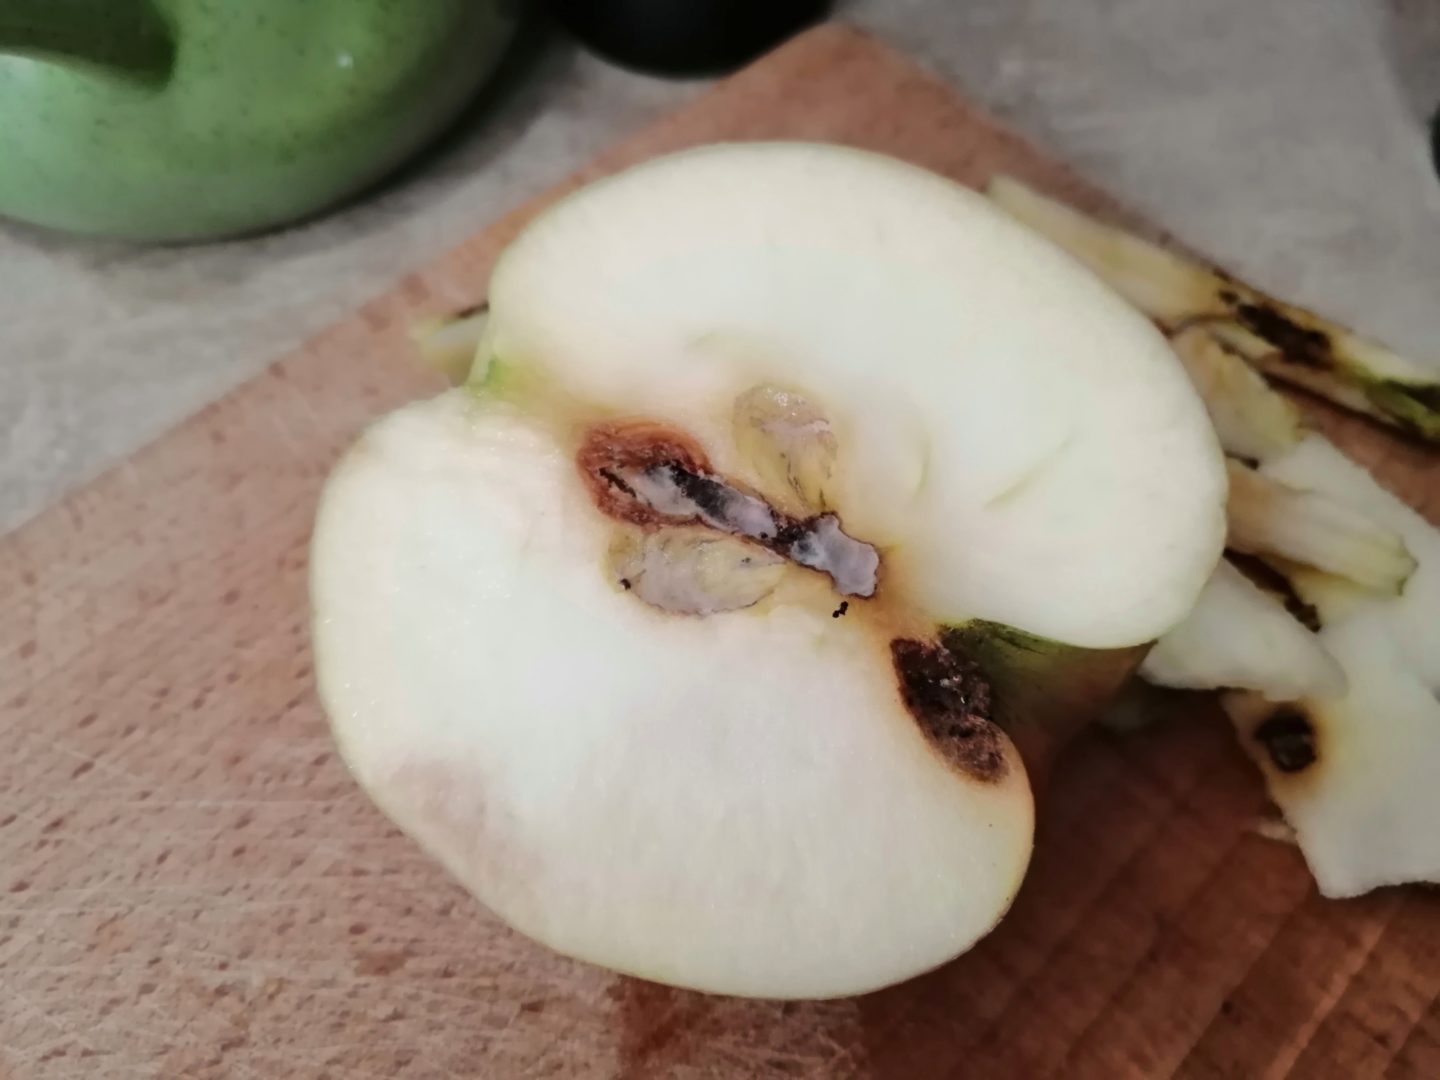 Серый налет в сердцевине яблока - альтернариоз